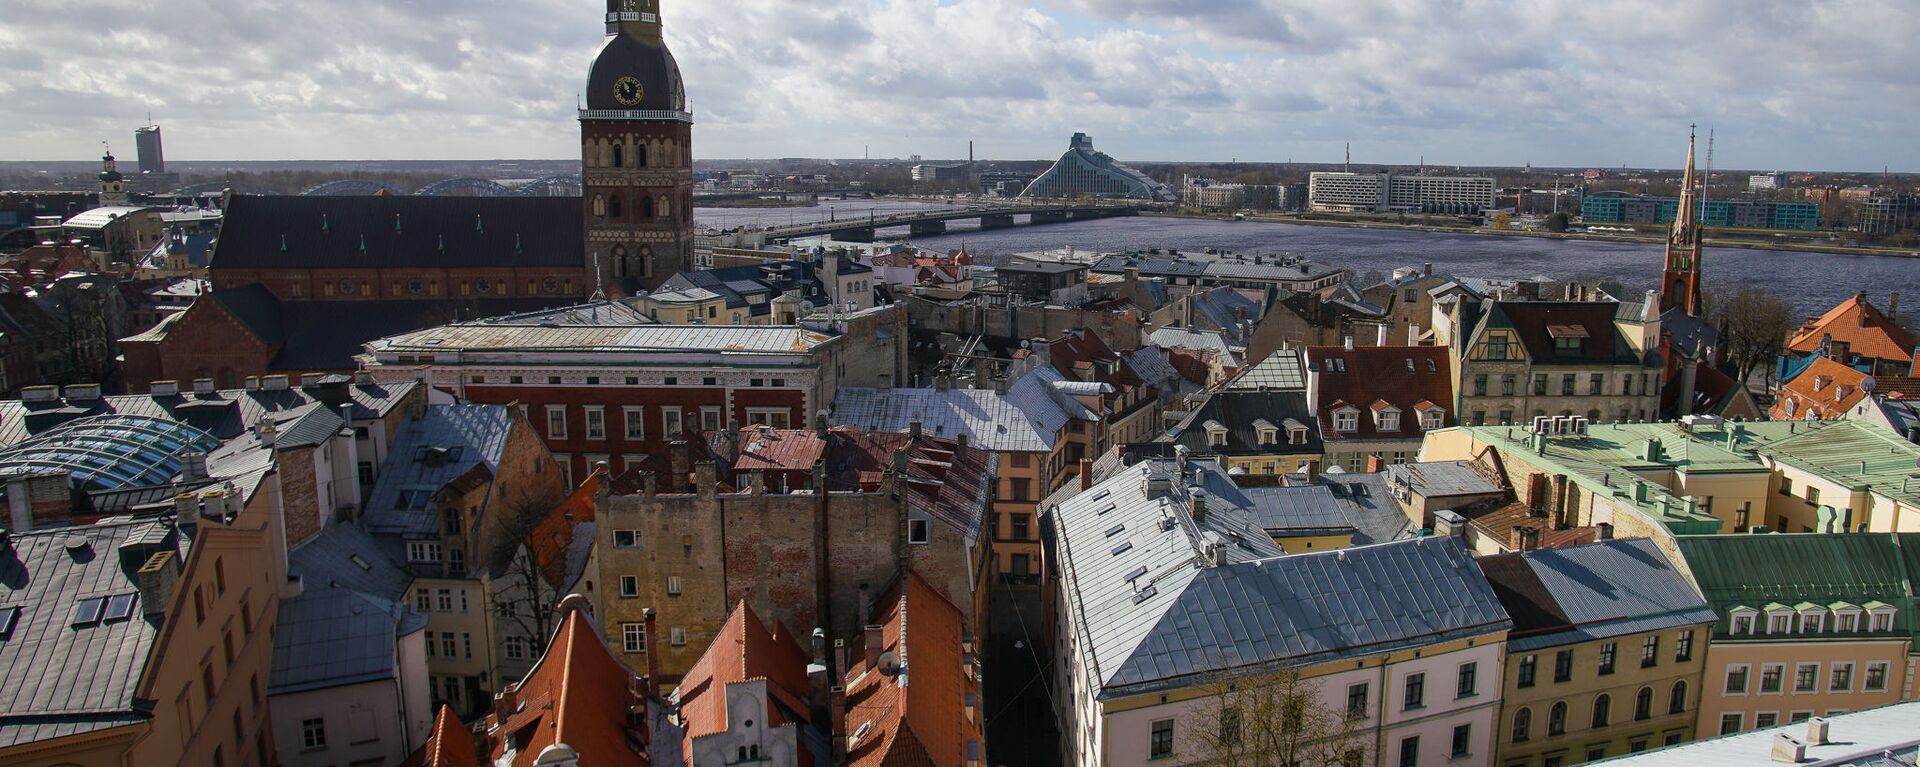 В Риге демонтировали петушка с церкви Св.Иакова, чтобы отреставрировать и заменить позолоту - Sputnik Латвия, 1920, 29.03.2022